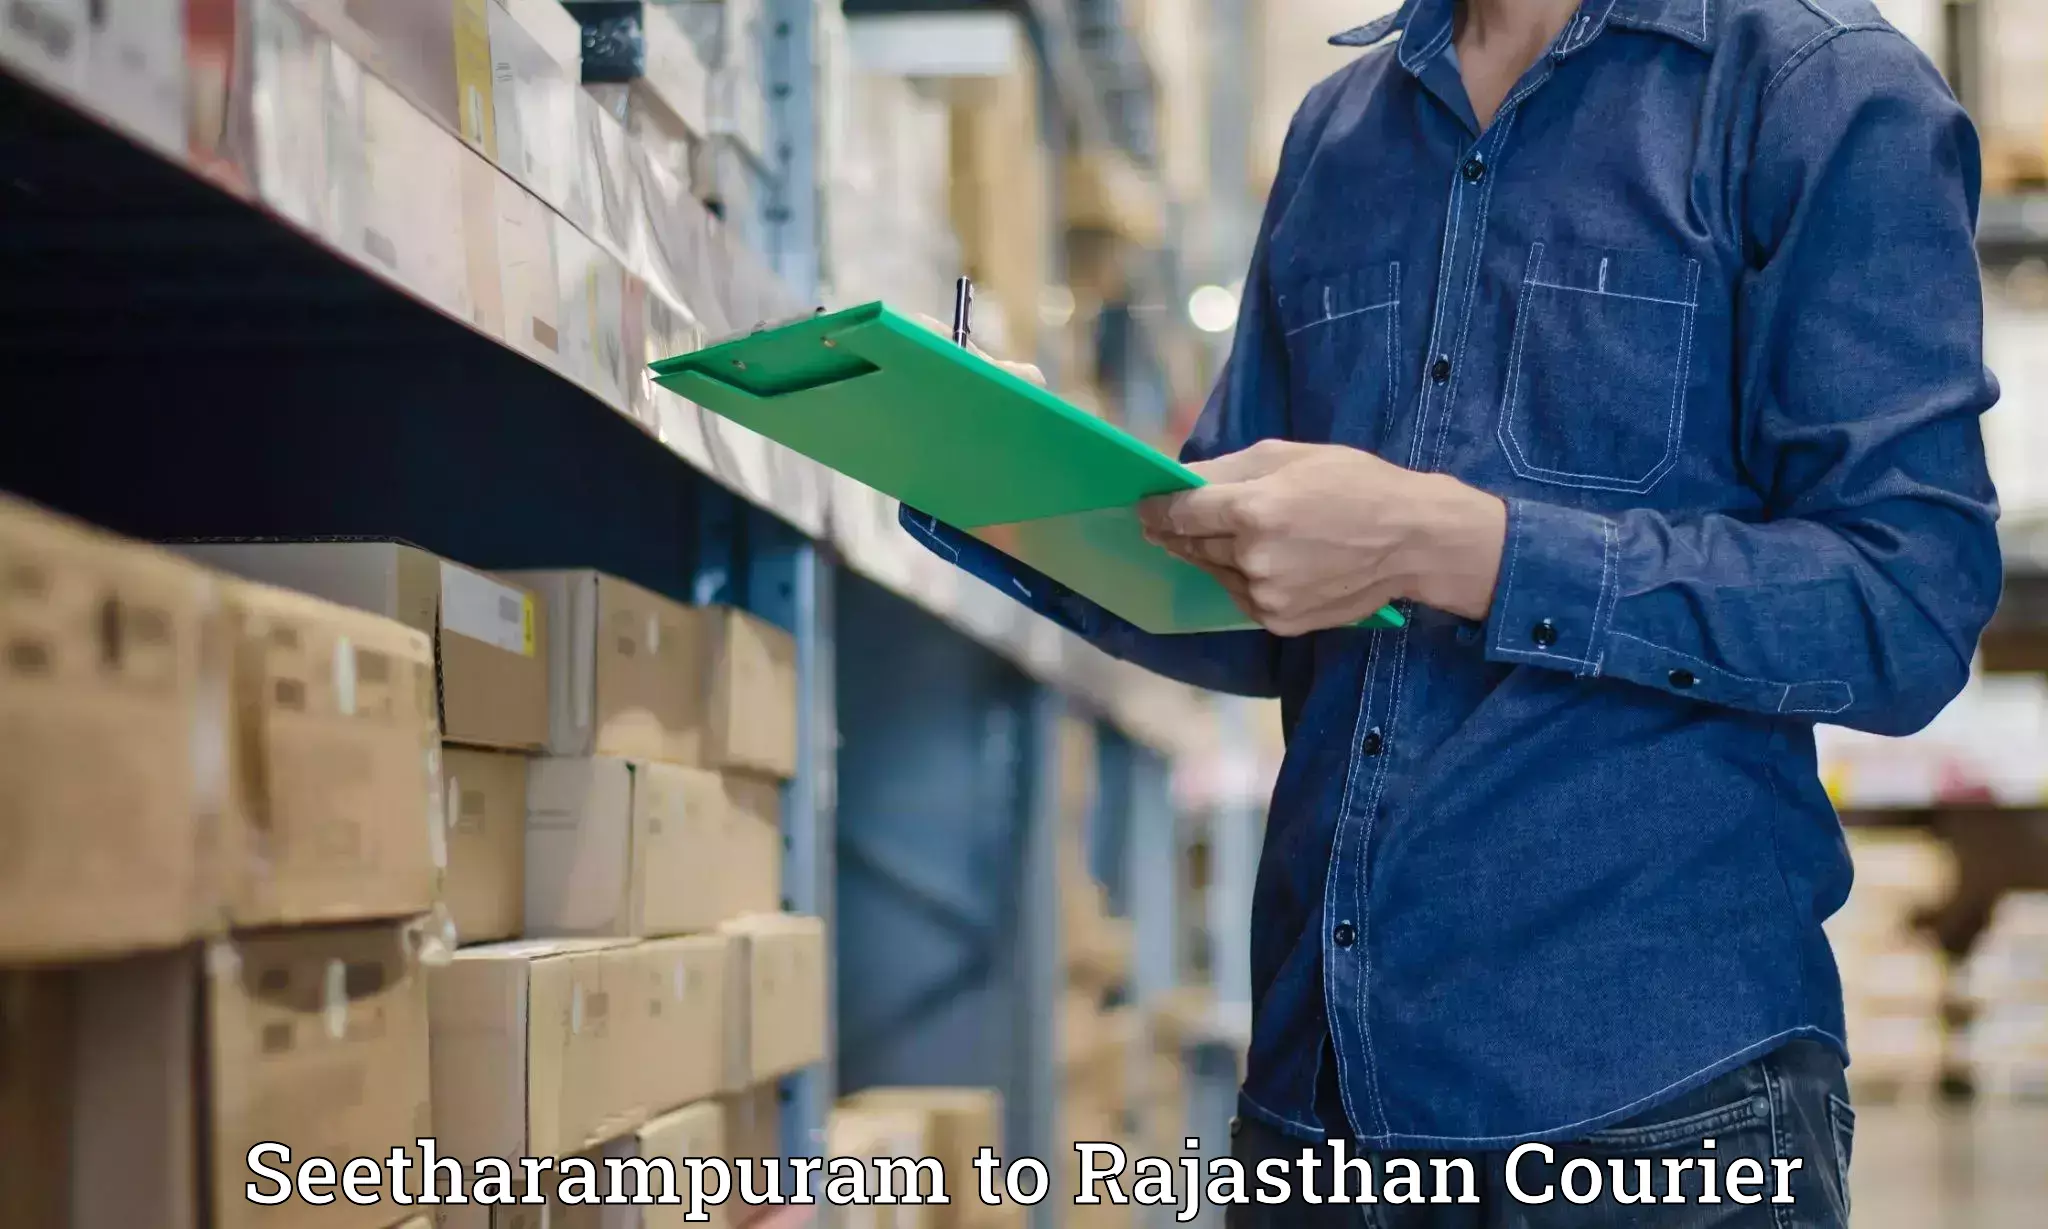 Baggage transport logistics in Seetharampuram to Rajasthan